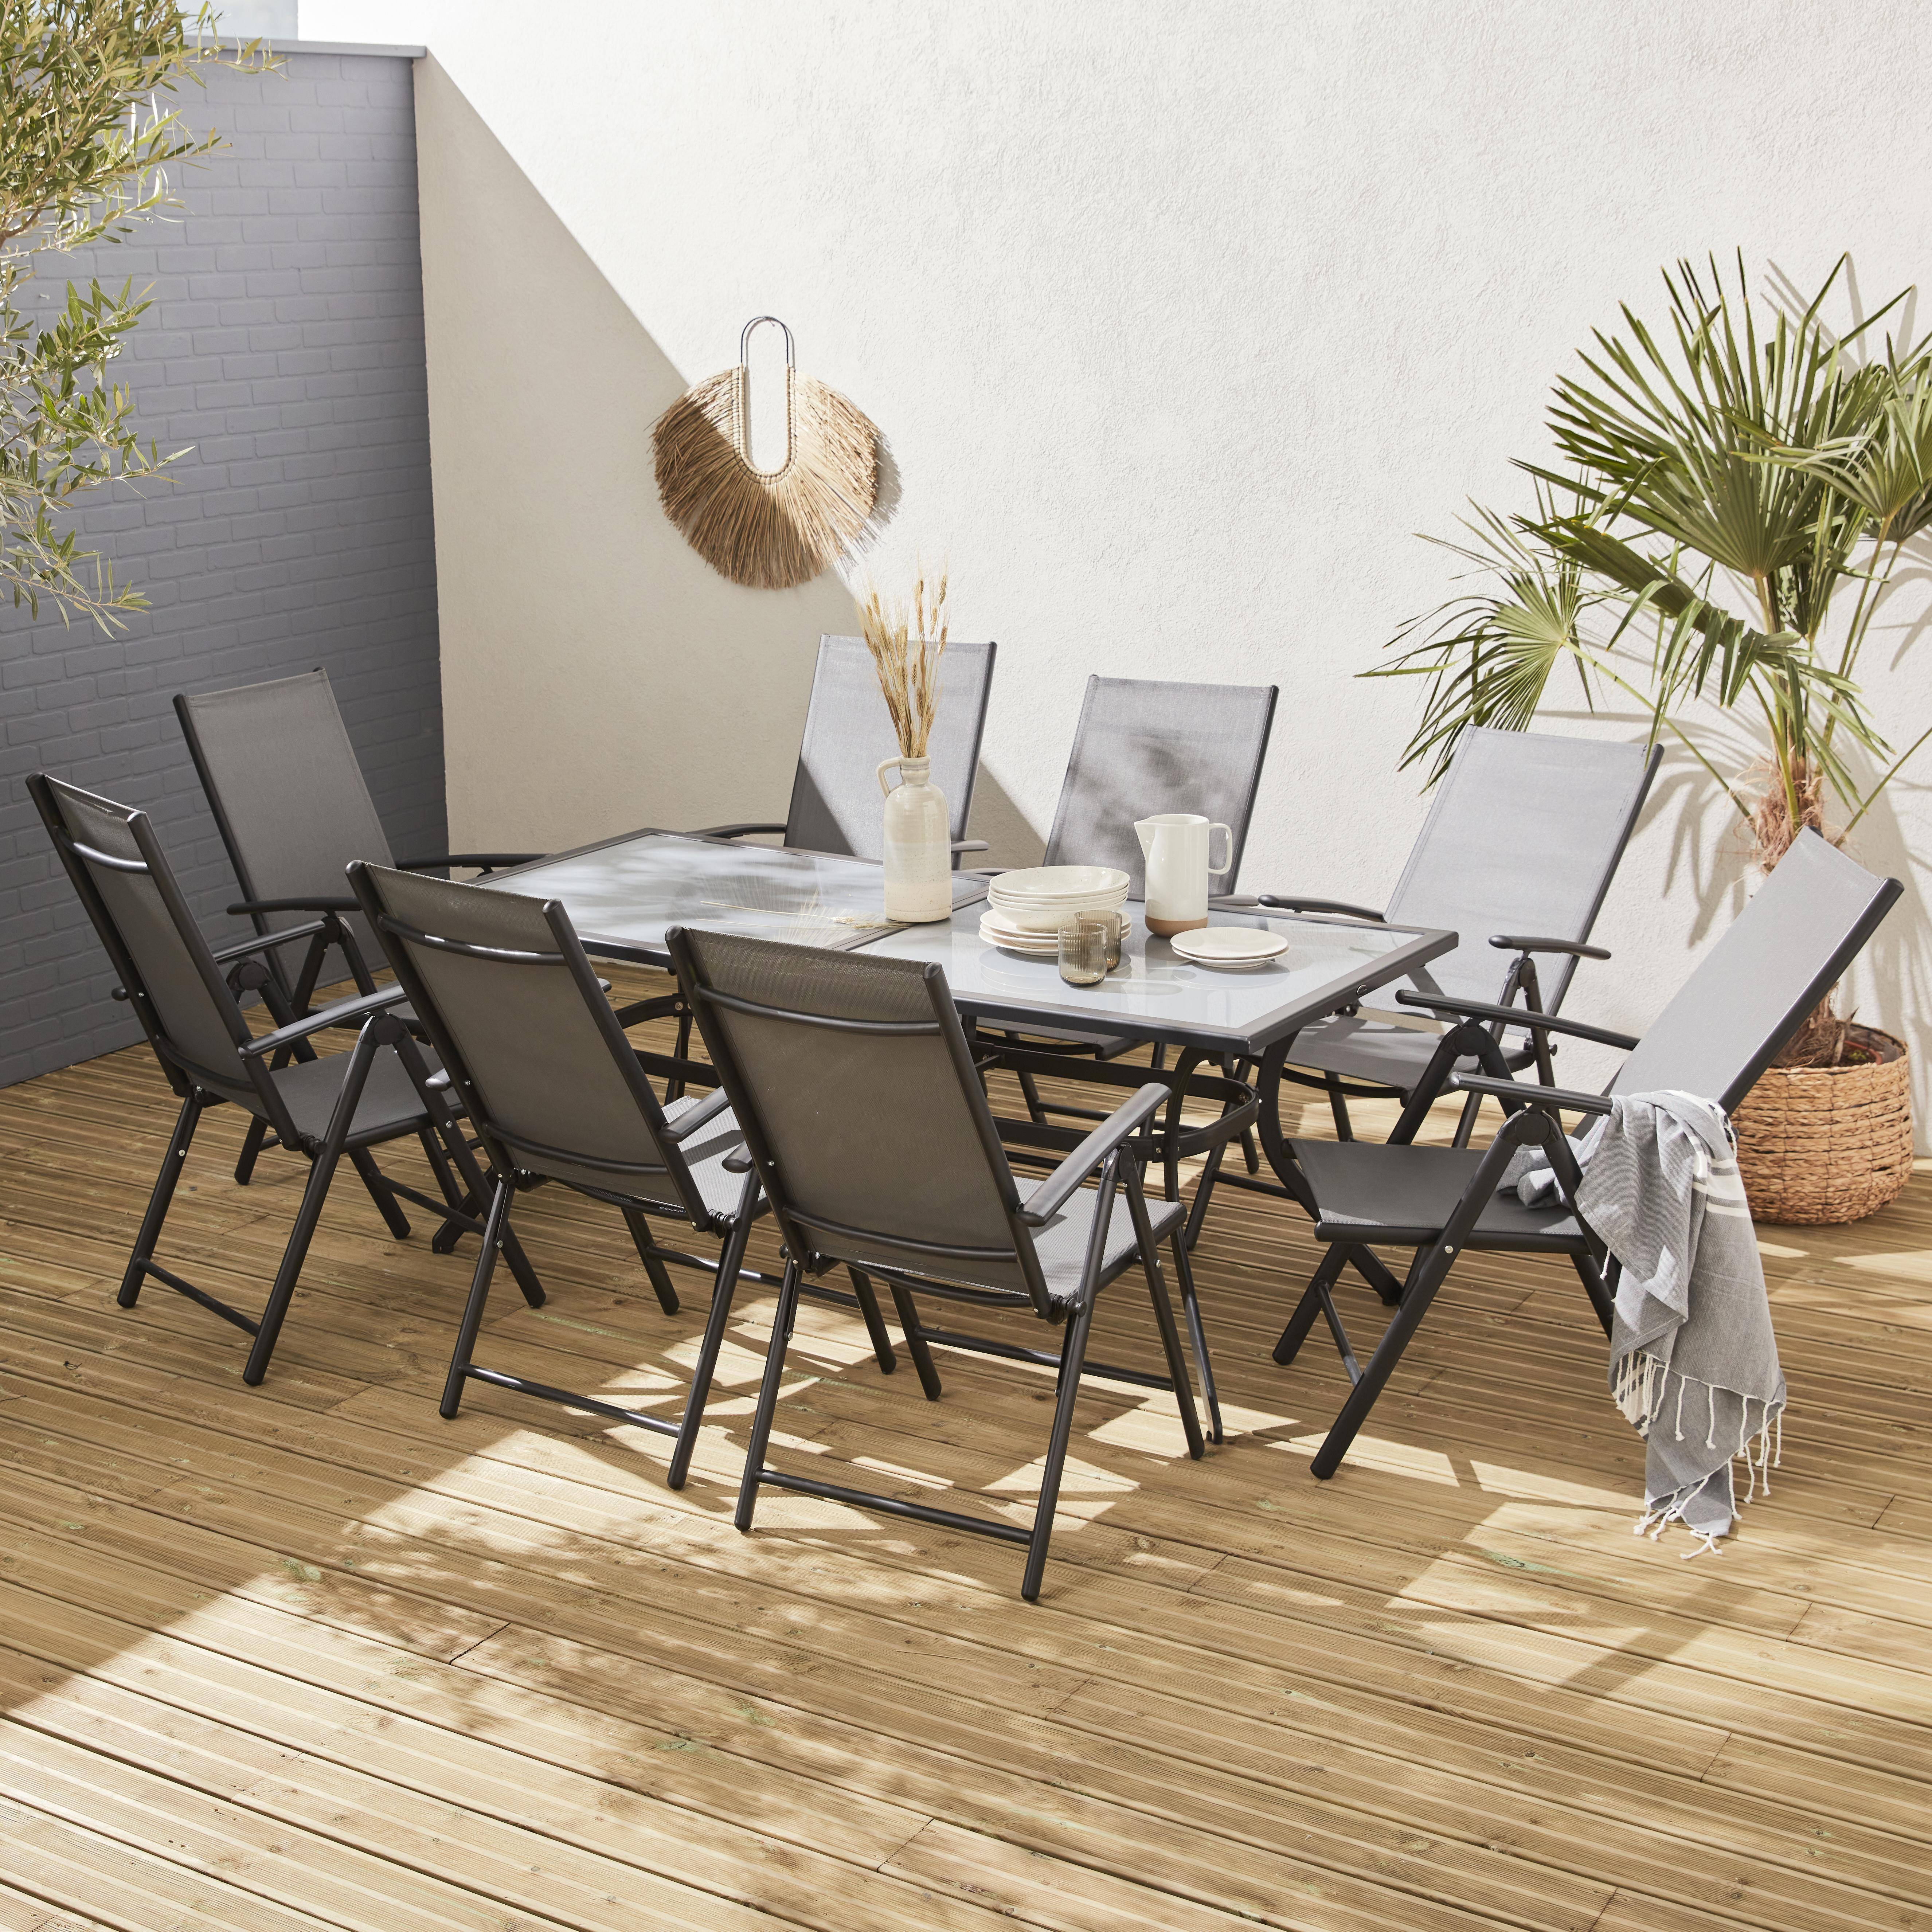 Set da giardino in alluminio e textilene - modello: Naevia - colore: Grigio, Antracite - 8 posti - 1 grande tavolo rettangolare, 8 poltrone pieghevoli Photo1